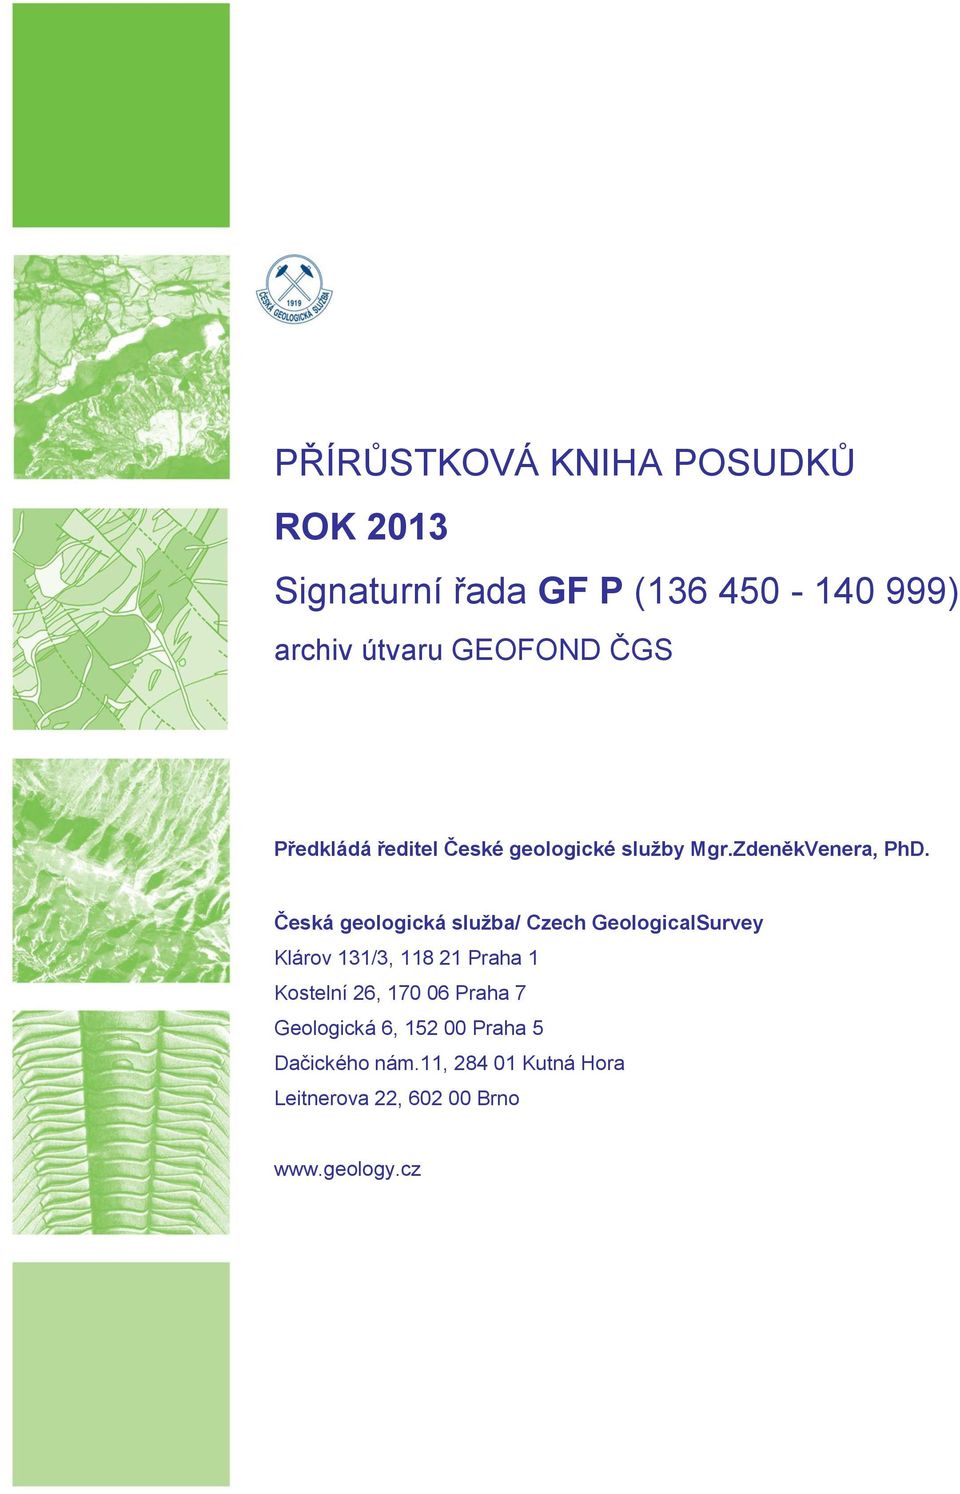 Česká geologická služba/ Czech GeologicalSurvey Klárov 131/3, 118 21 Praha 1 Kostelní 26, 170